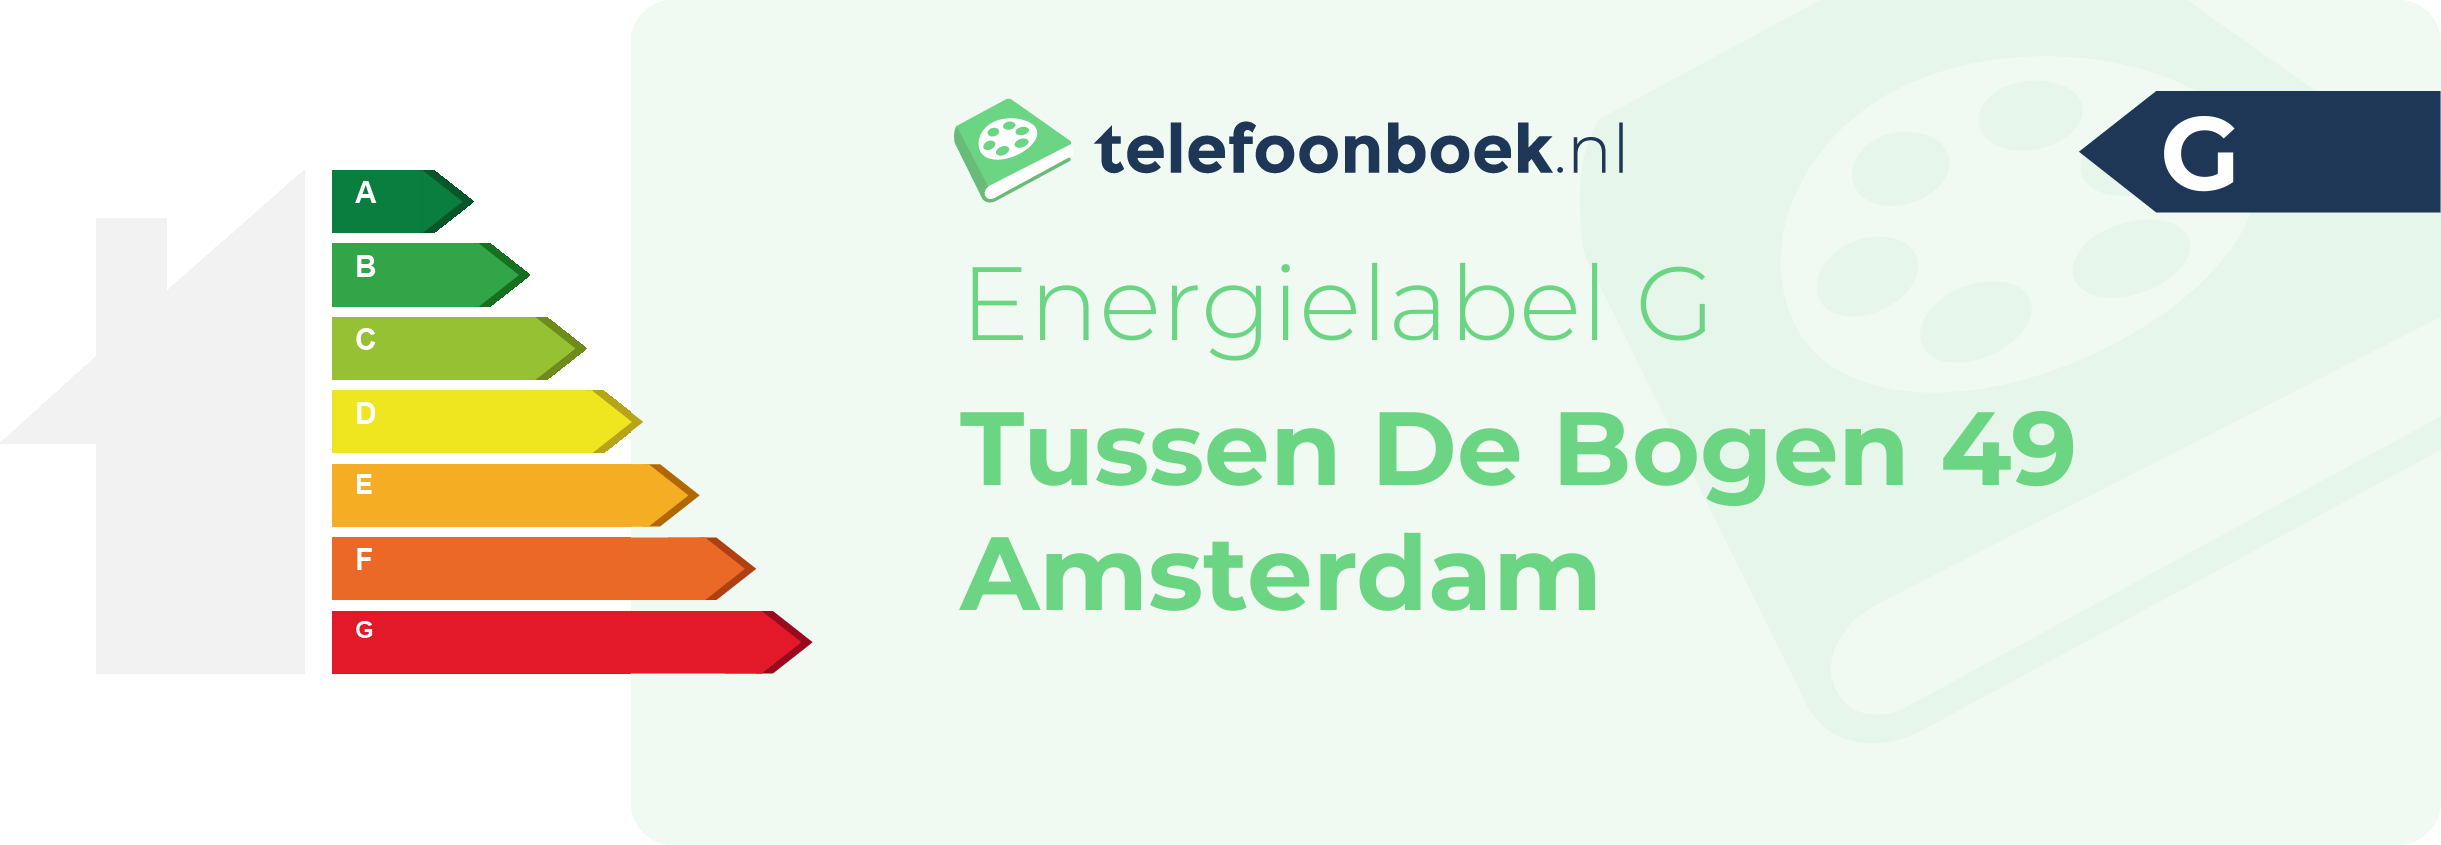 Energielabel Tussen De Bogen 49 Amsterdam